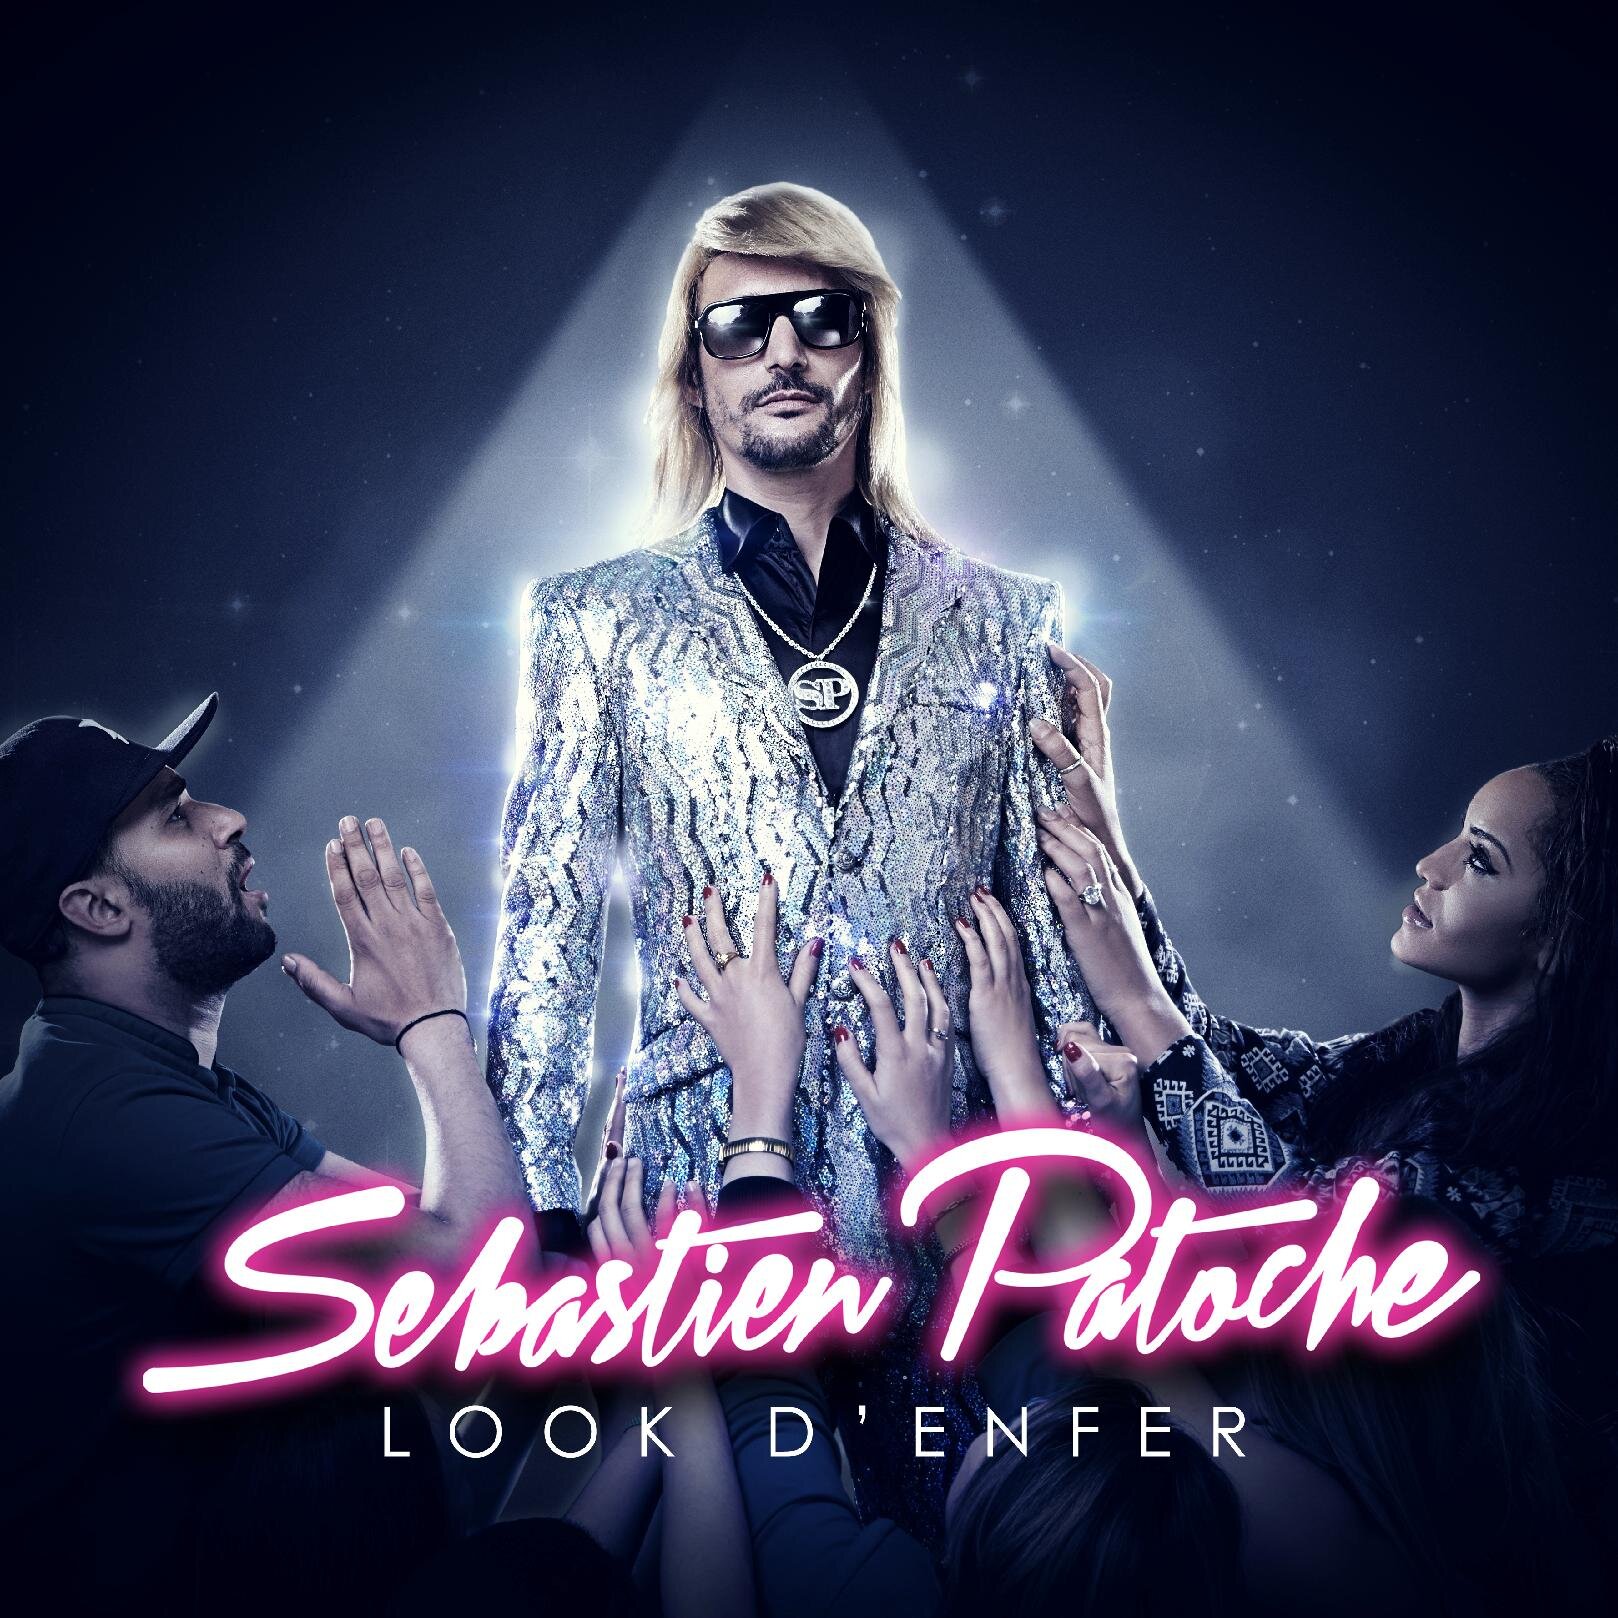 aka Sébastien Patoche Compte Officiel ! Chanteur de charme. Album #LookDenfer disponible : http://t.co/HDS2N8EnrE en écoute ici http://t.co/peAgnq3oy3